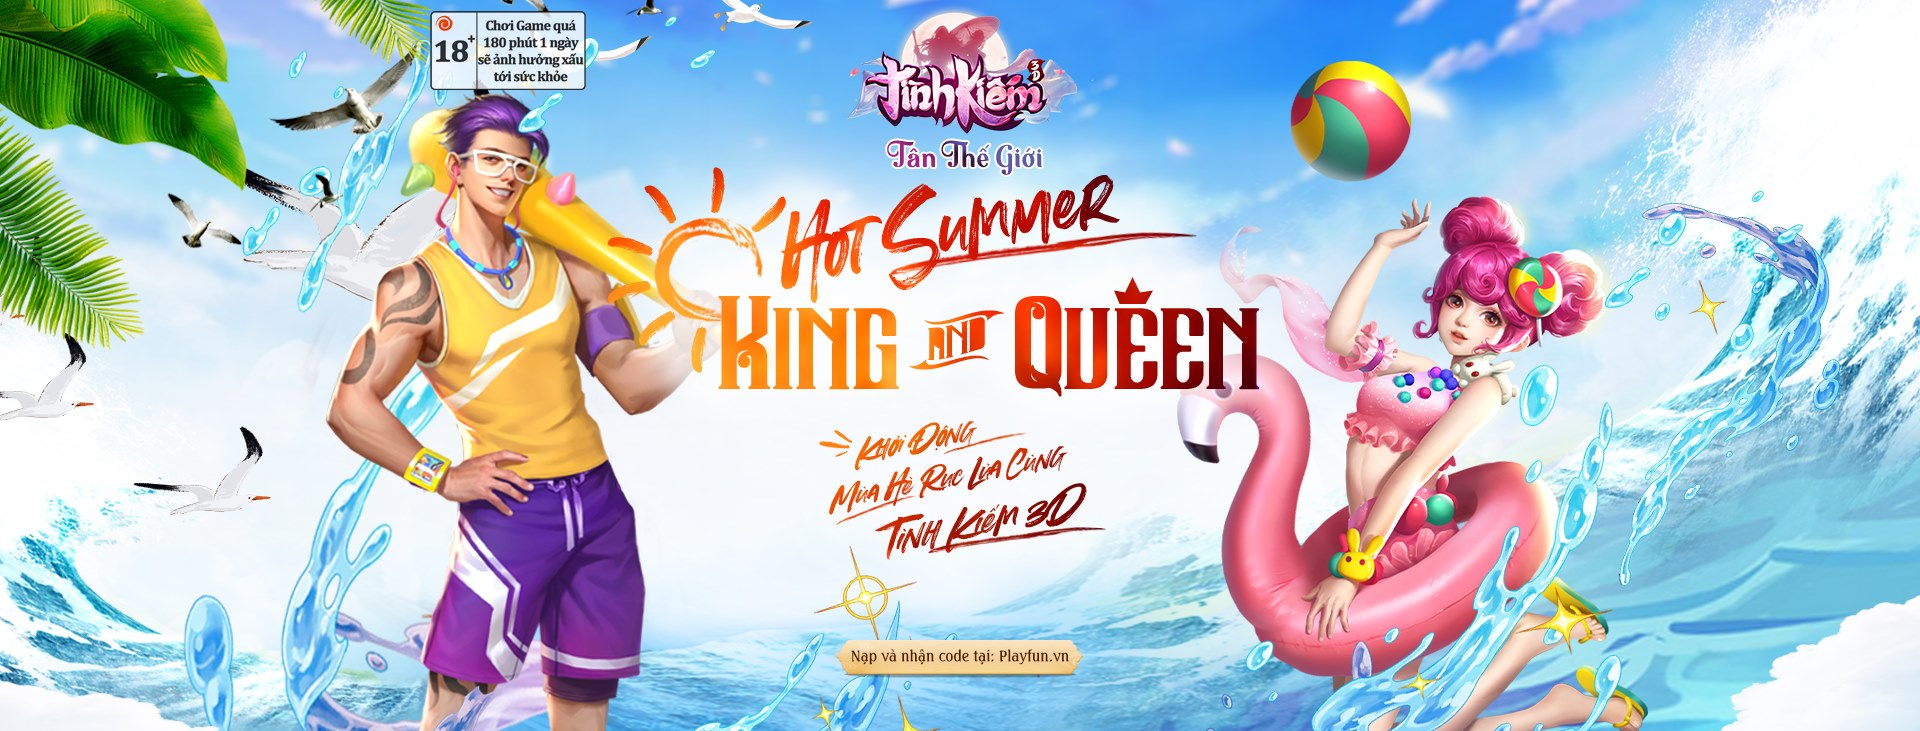 Hot summer – King & Queen Tình Kiếm 3D tự tin phá đảo tiêu chuẩn trai xinh gái đẹp